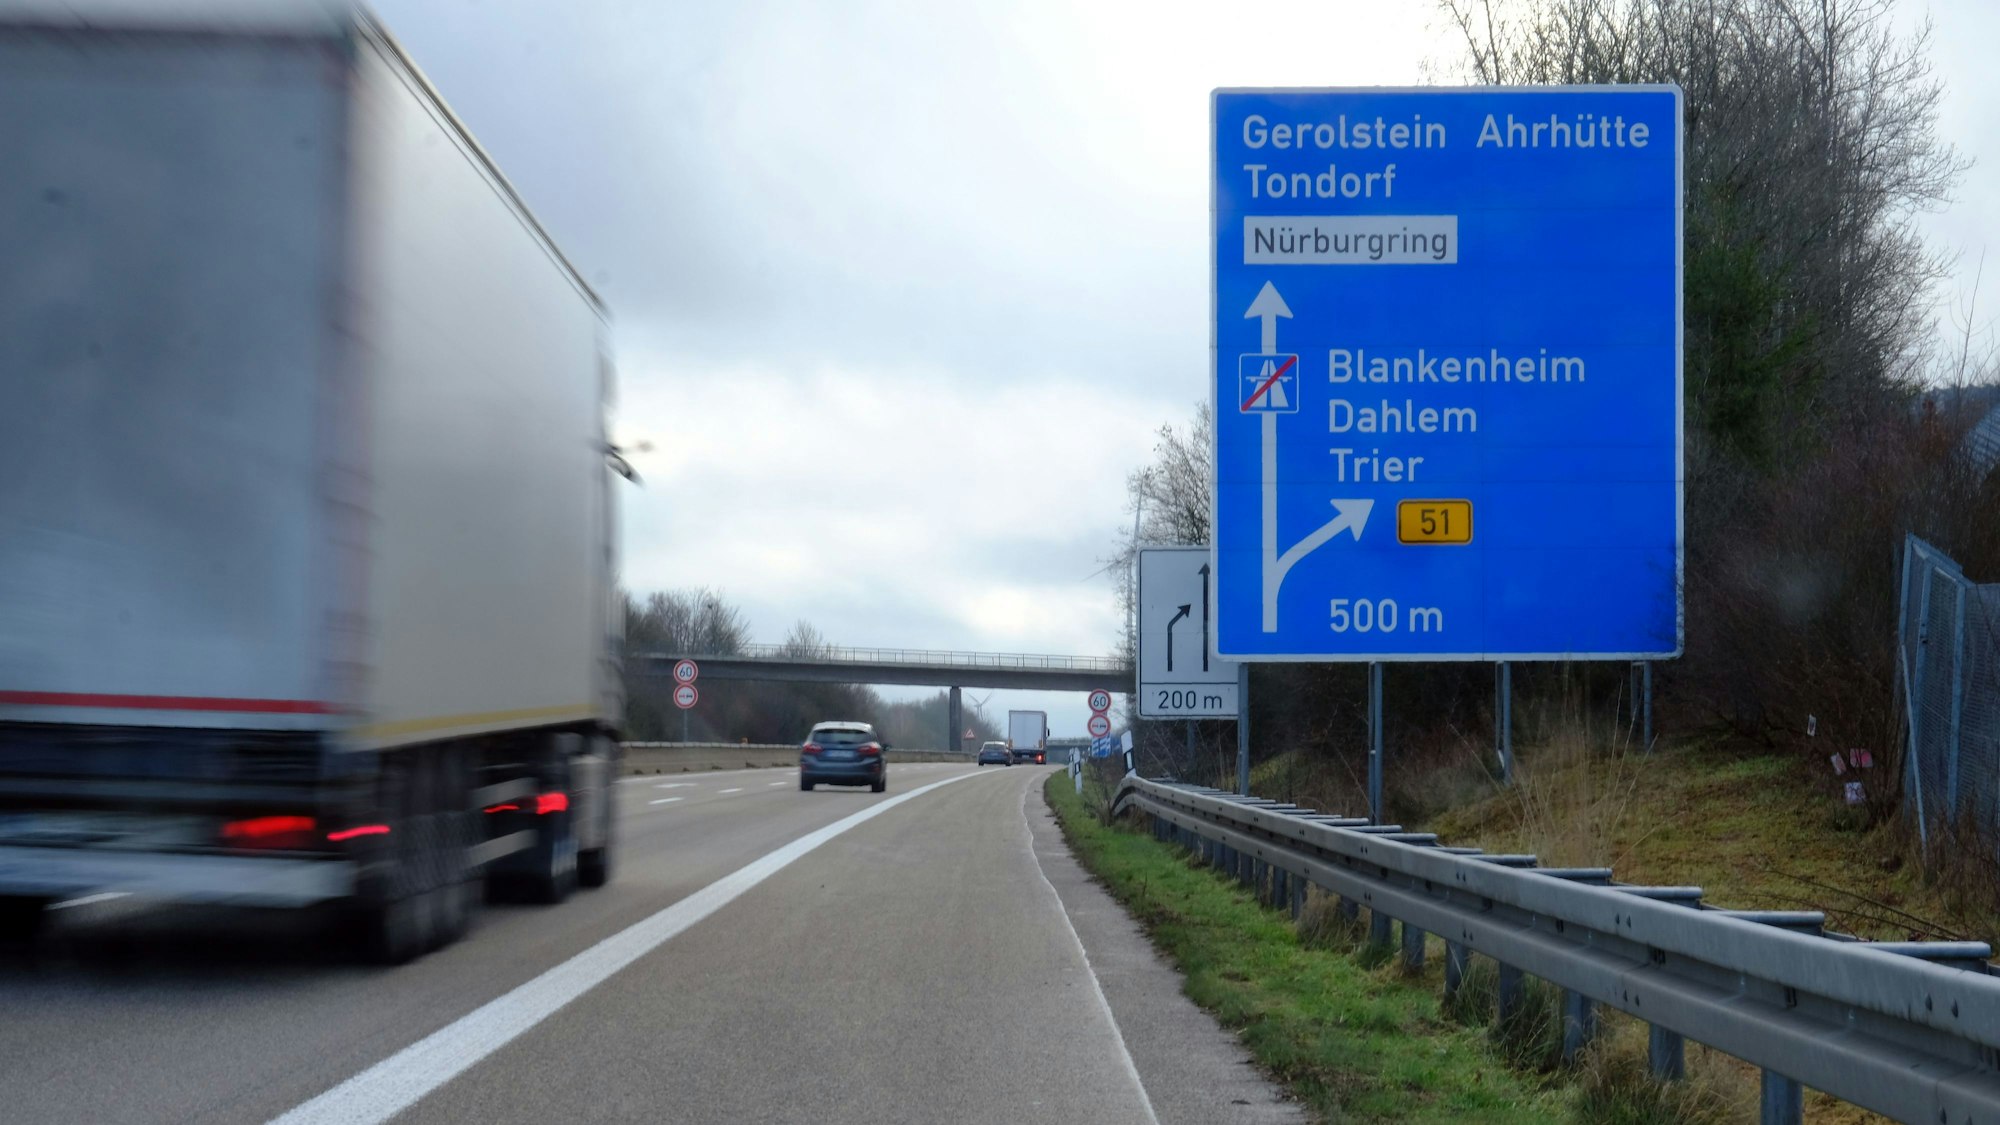 Ausbauende der Autobahn 1 A1 bei Nettersheim-Tondorf, Abfahrt Blankenheim.